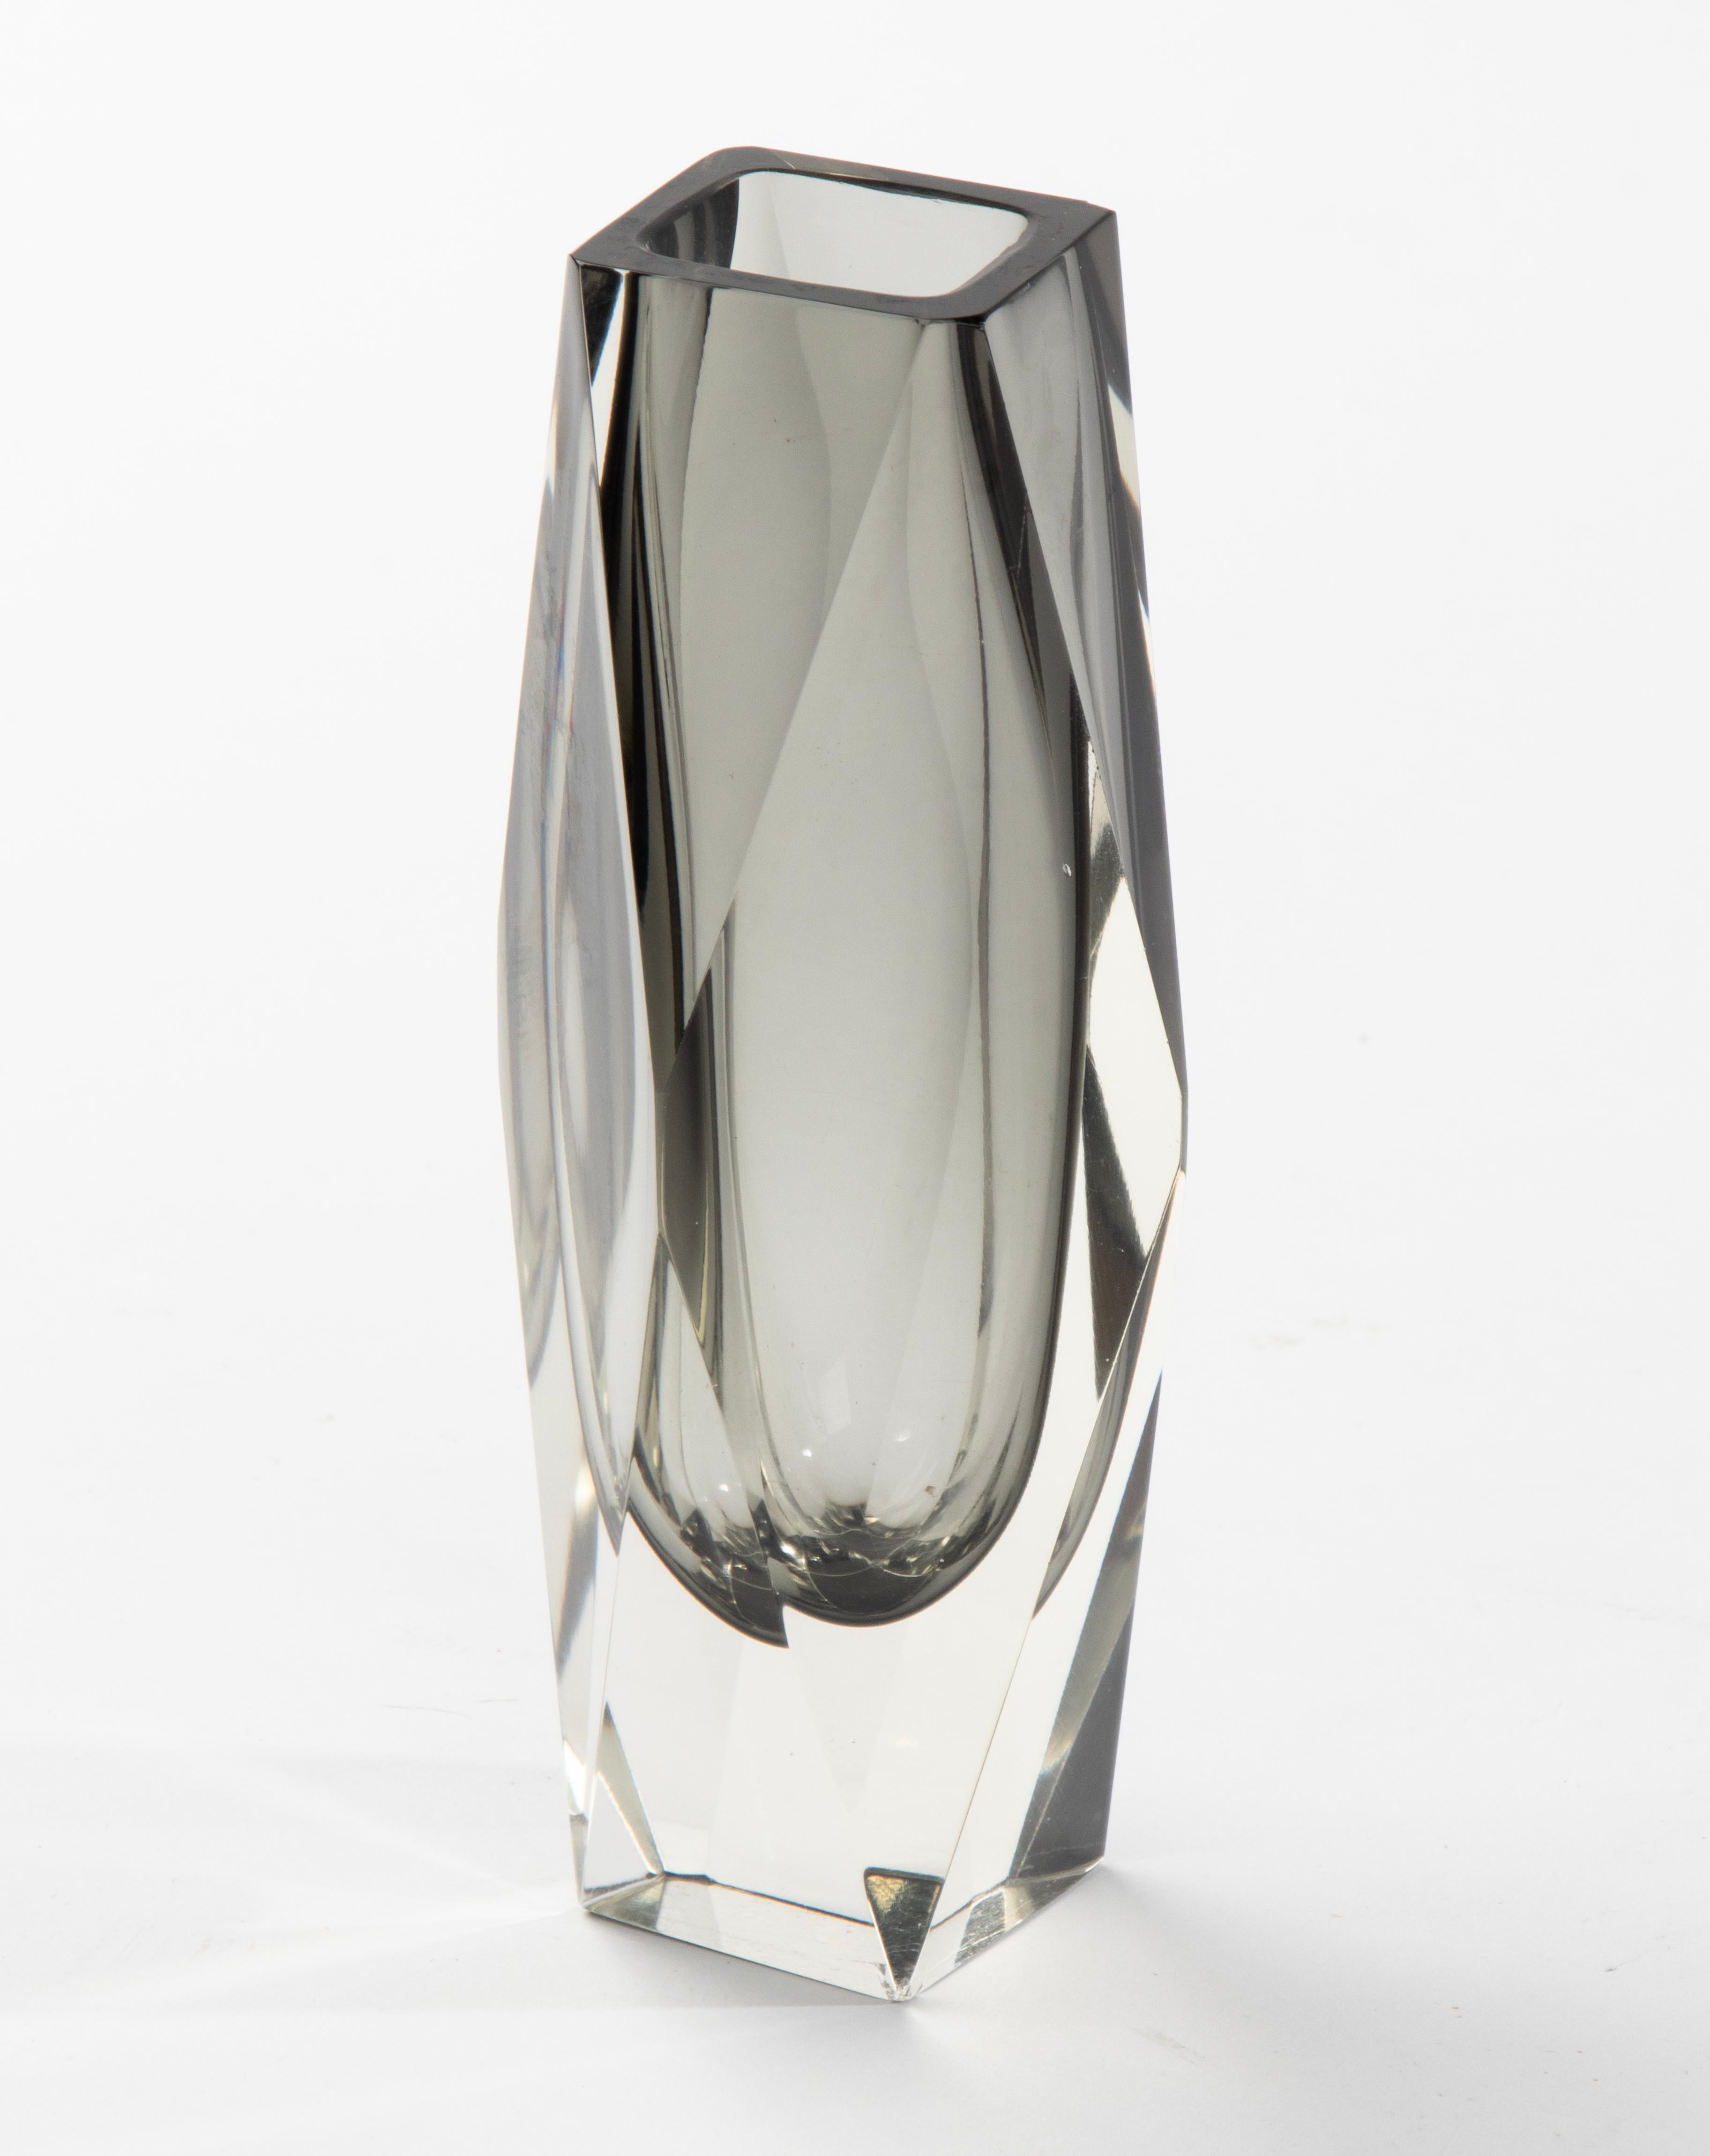 Eine schöne Sommerso-Vase aus Kunstglas, die dem italienischen Designer Flavio Poli zugeschrieben wird. 
Die Vase ist in gutem Zustand. Schöne Farbe und Qualität. 

Abmessungen: 7,5 x 7,5 cm und 16 cm hoch. 
Kostenloser Versand weltweit